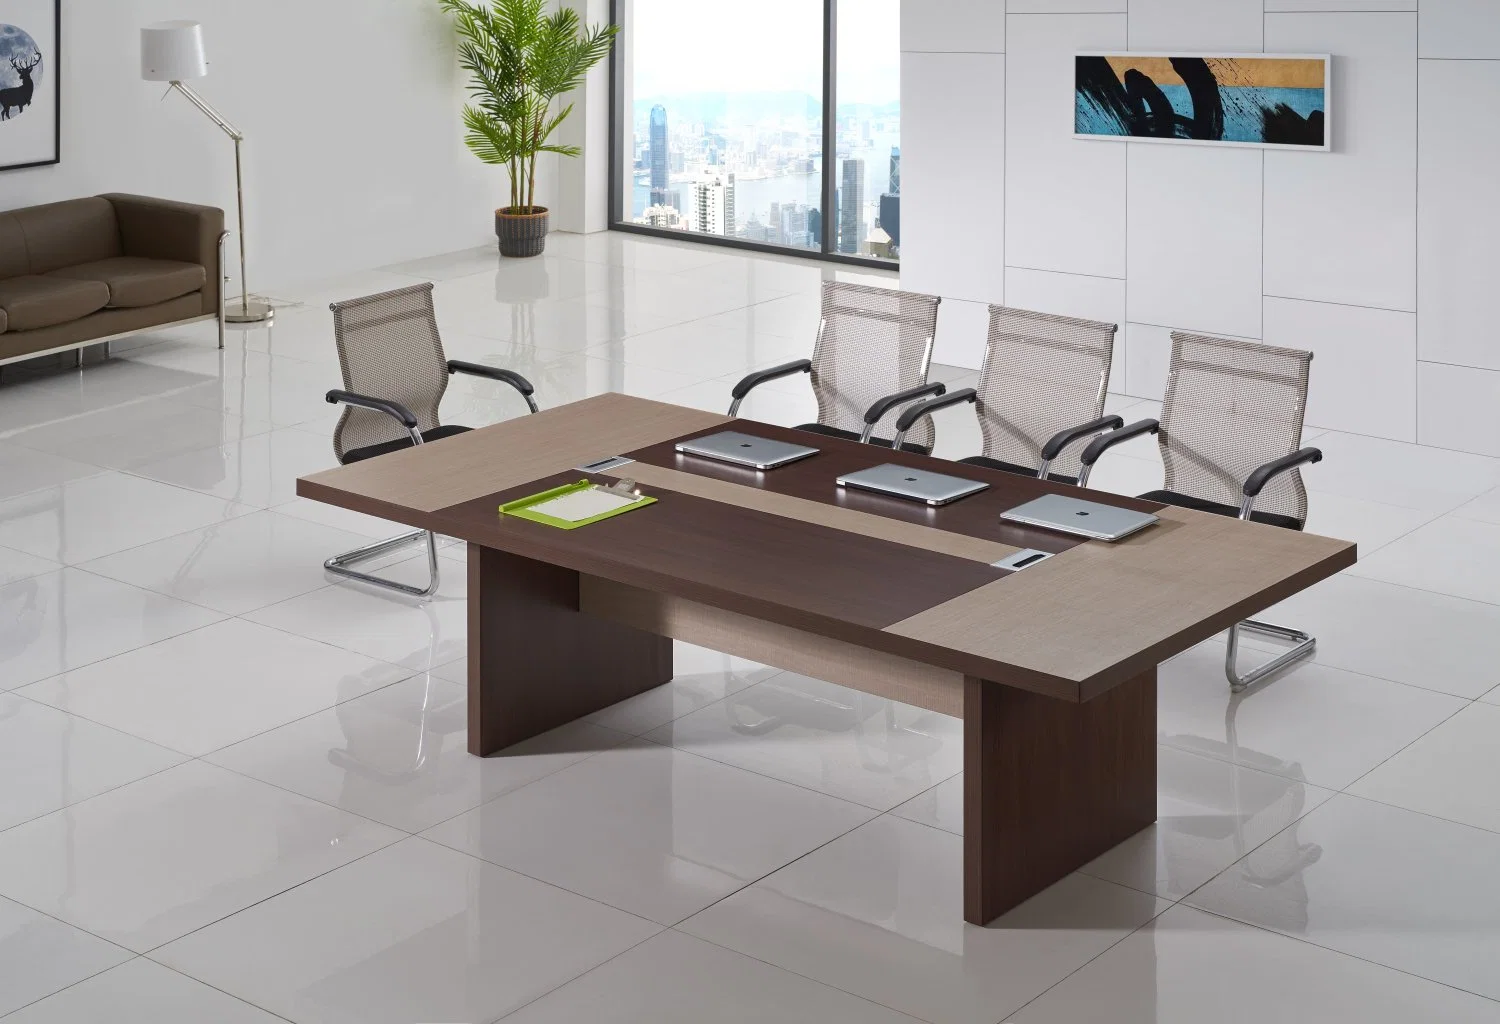 طاولة اجتماع خشبية متعددة الأشخاص لغرفة اجتماعات بتصميم حديث